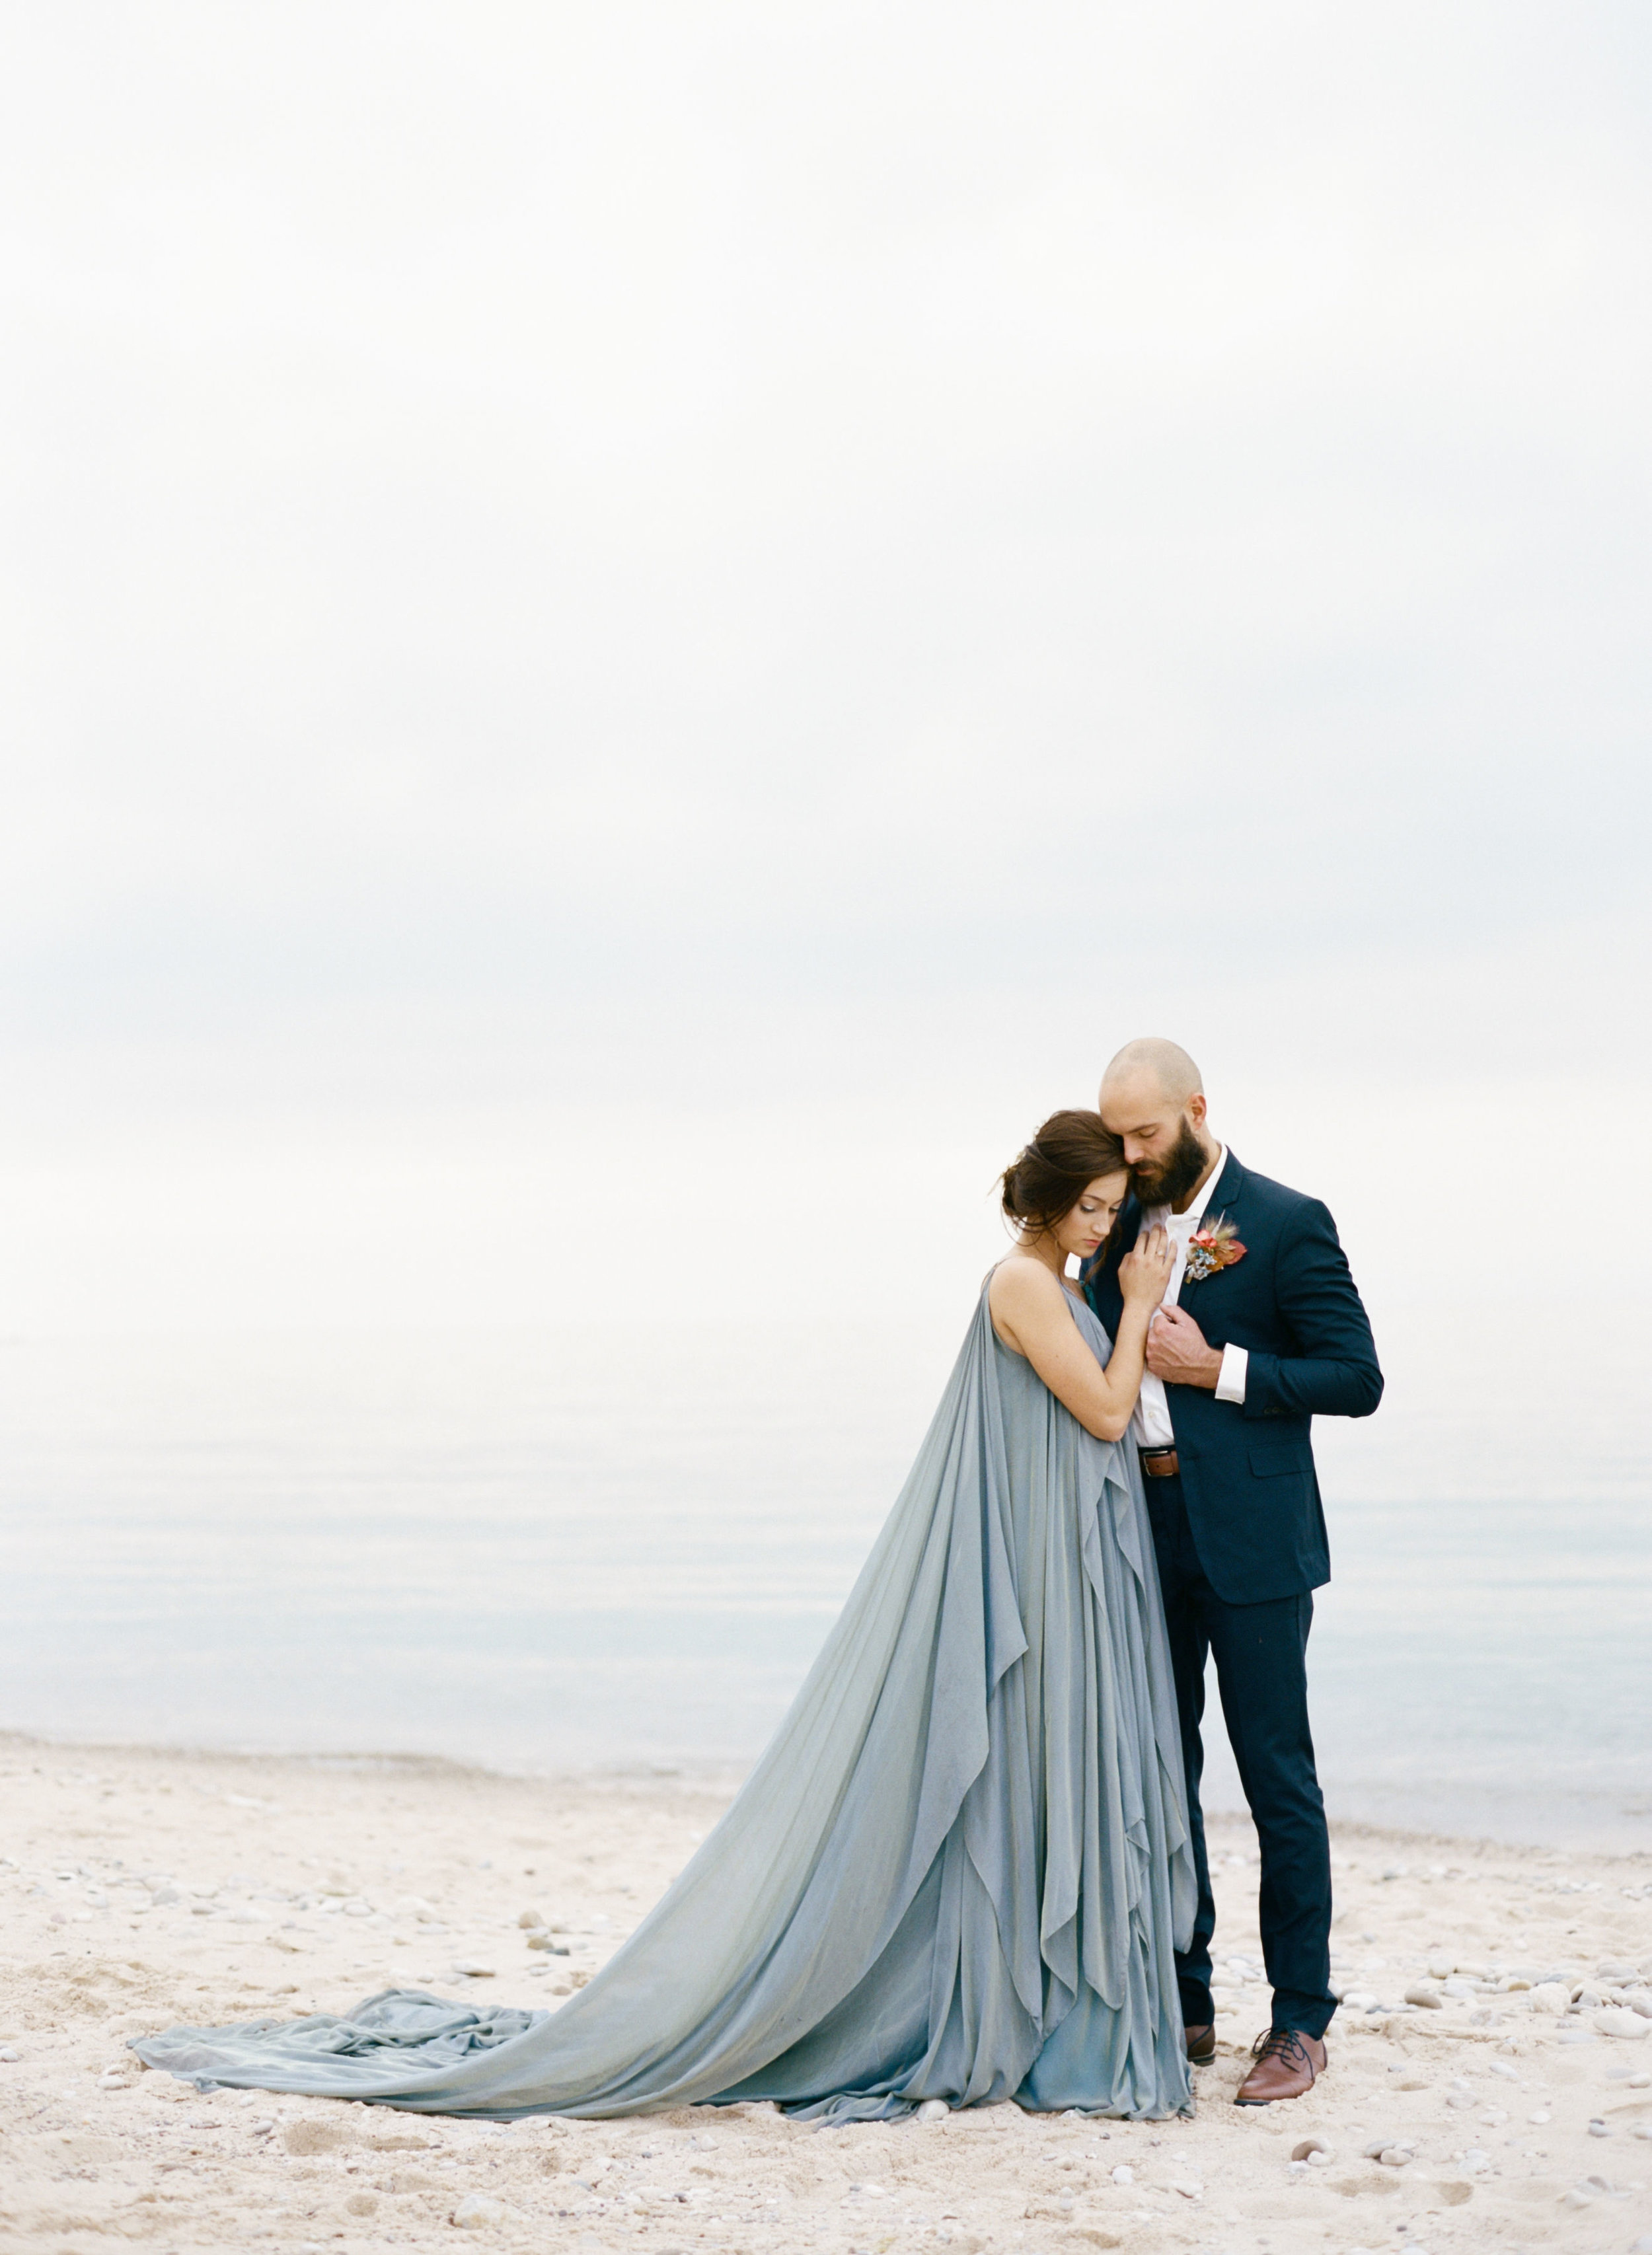 Ianassa 5 - relaxed blue flowing beach wedding dressIanassa 1 - relaxed blue flowing beach wedding dress.jpg